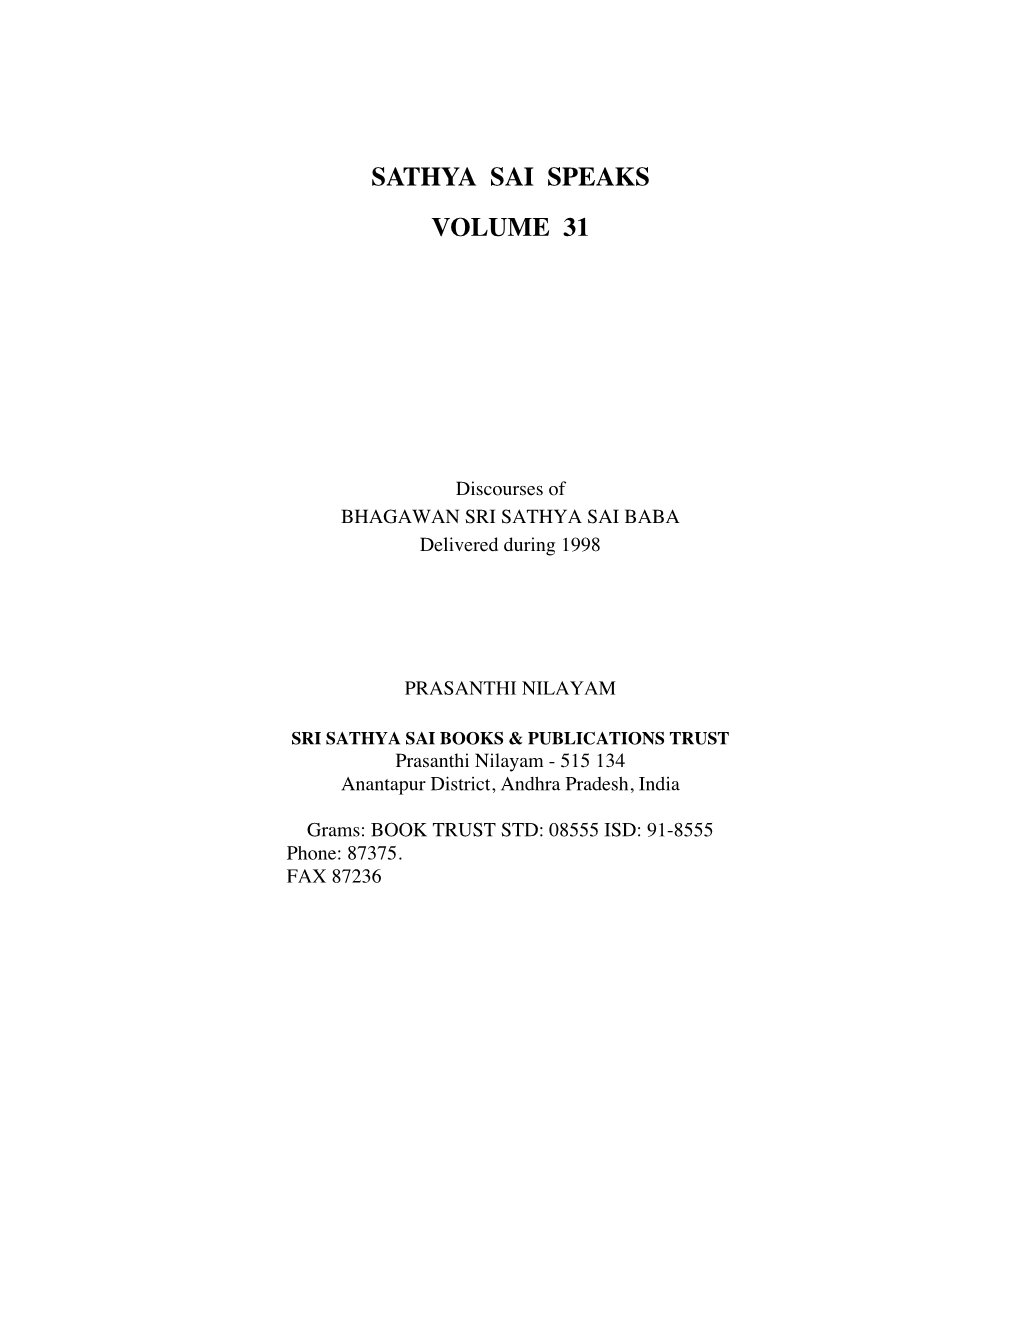 Sathya Sai Speaks Volume 31